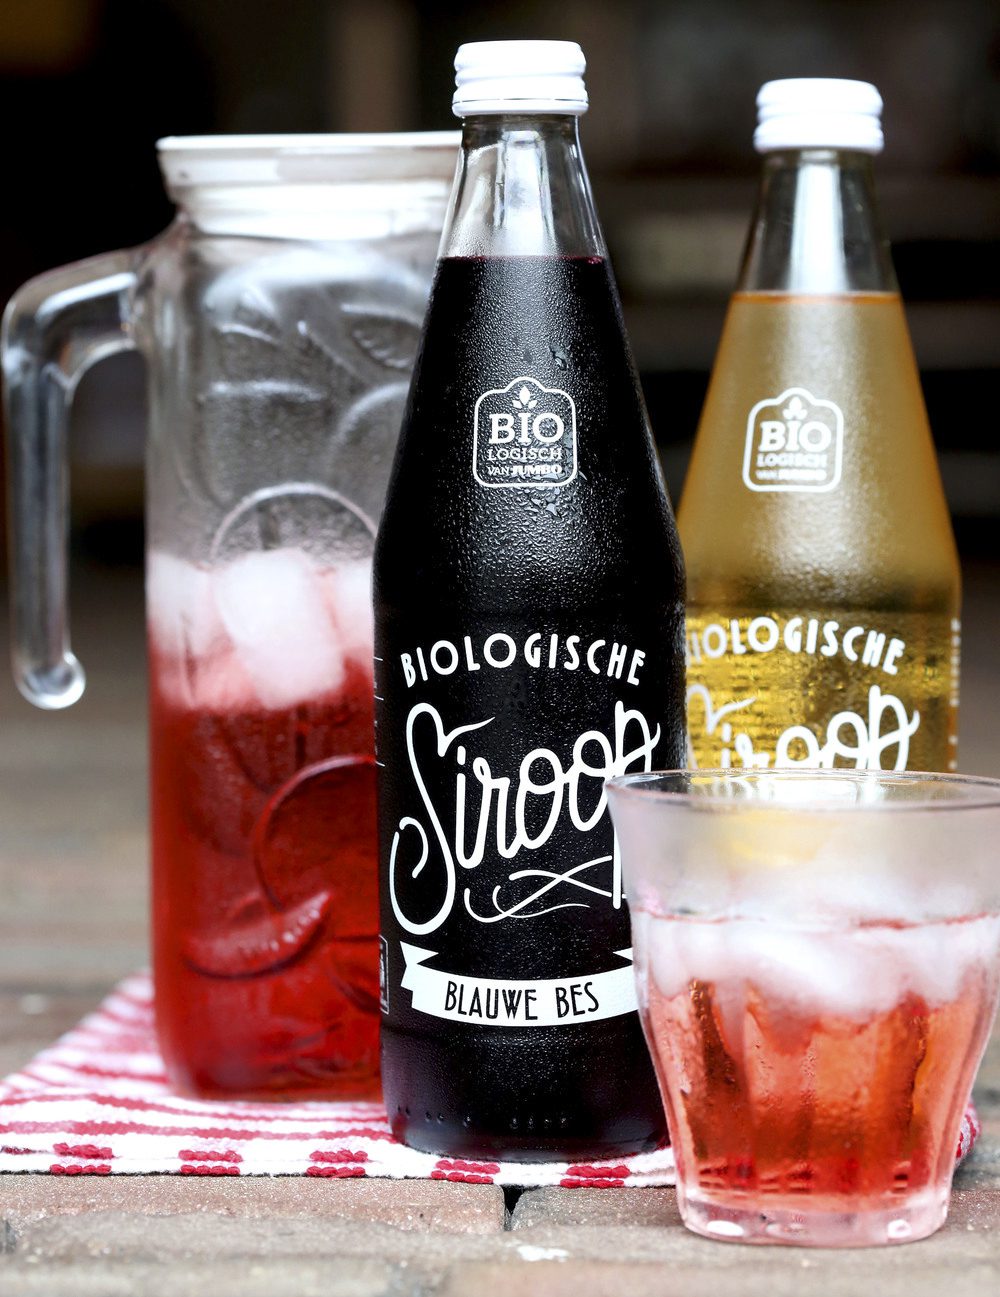 En este ejemplo, tanto el diseño gráfico como el diseño del envase de la botella tiene una clara inspiración vintage.